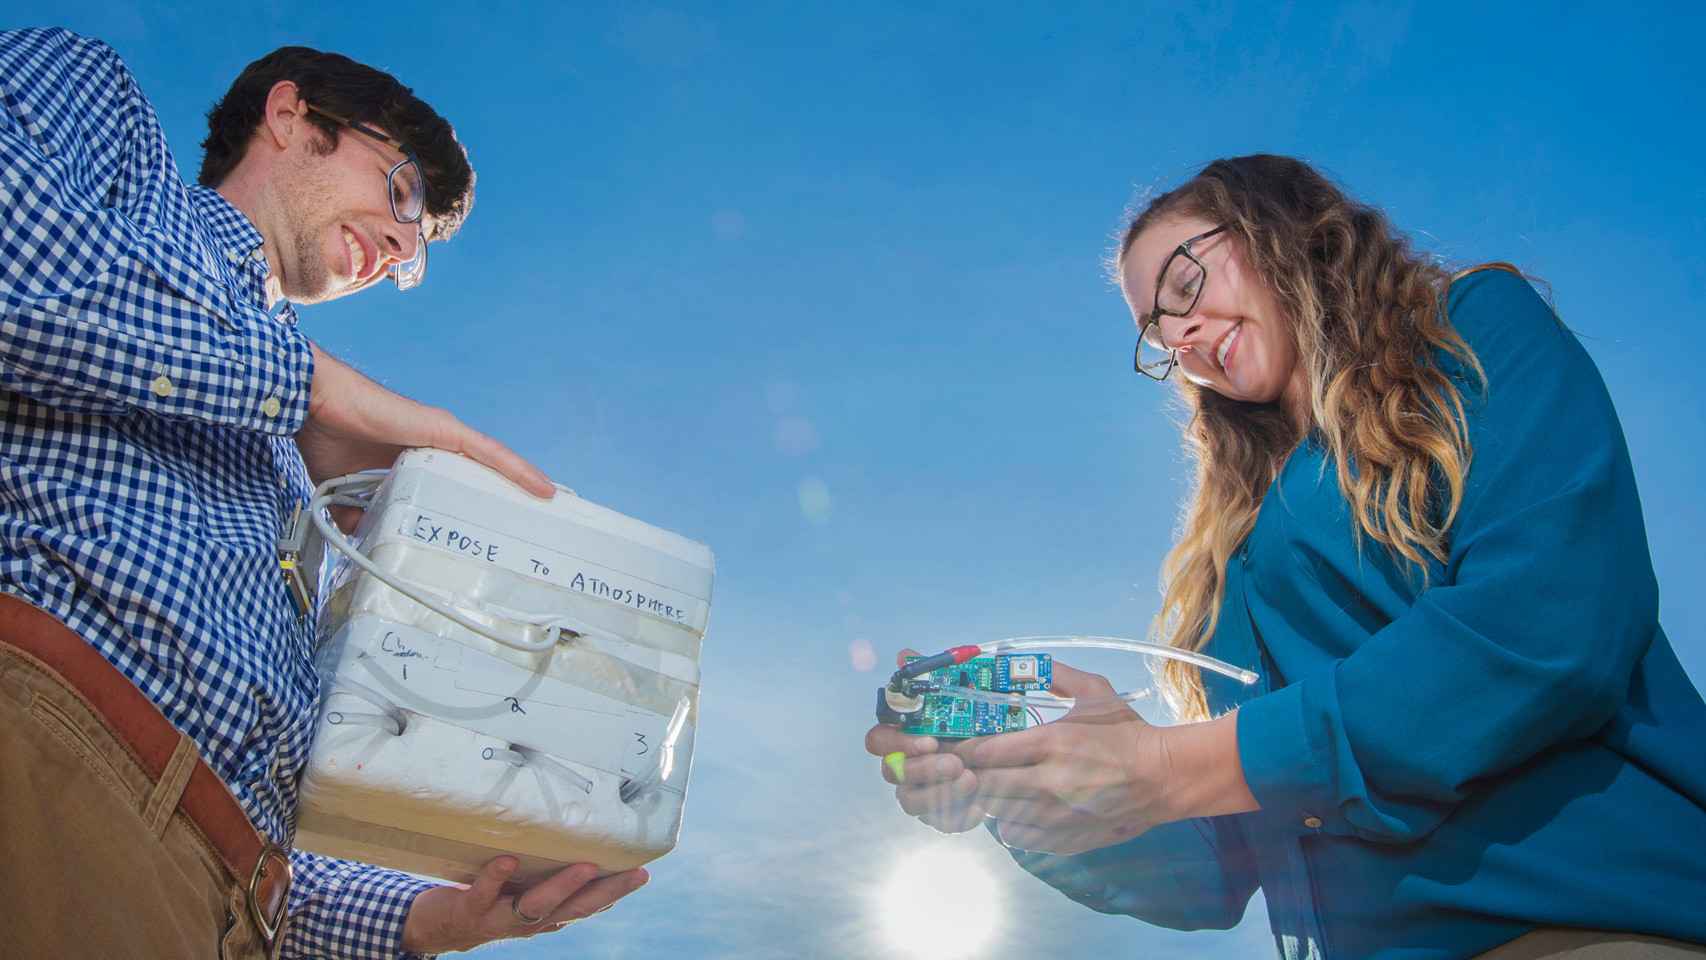 Dany Bowman (izquierda) y su compañera Sarah Albert (derecha) guardando un sensor de infrasonido en una caja.